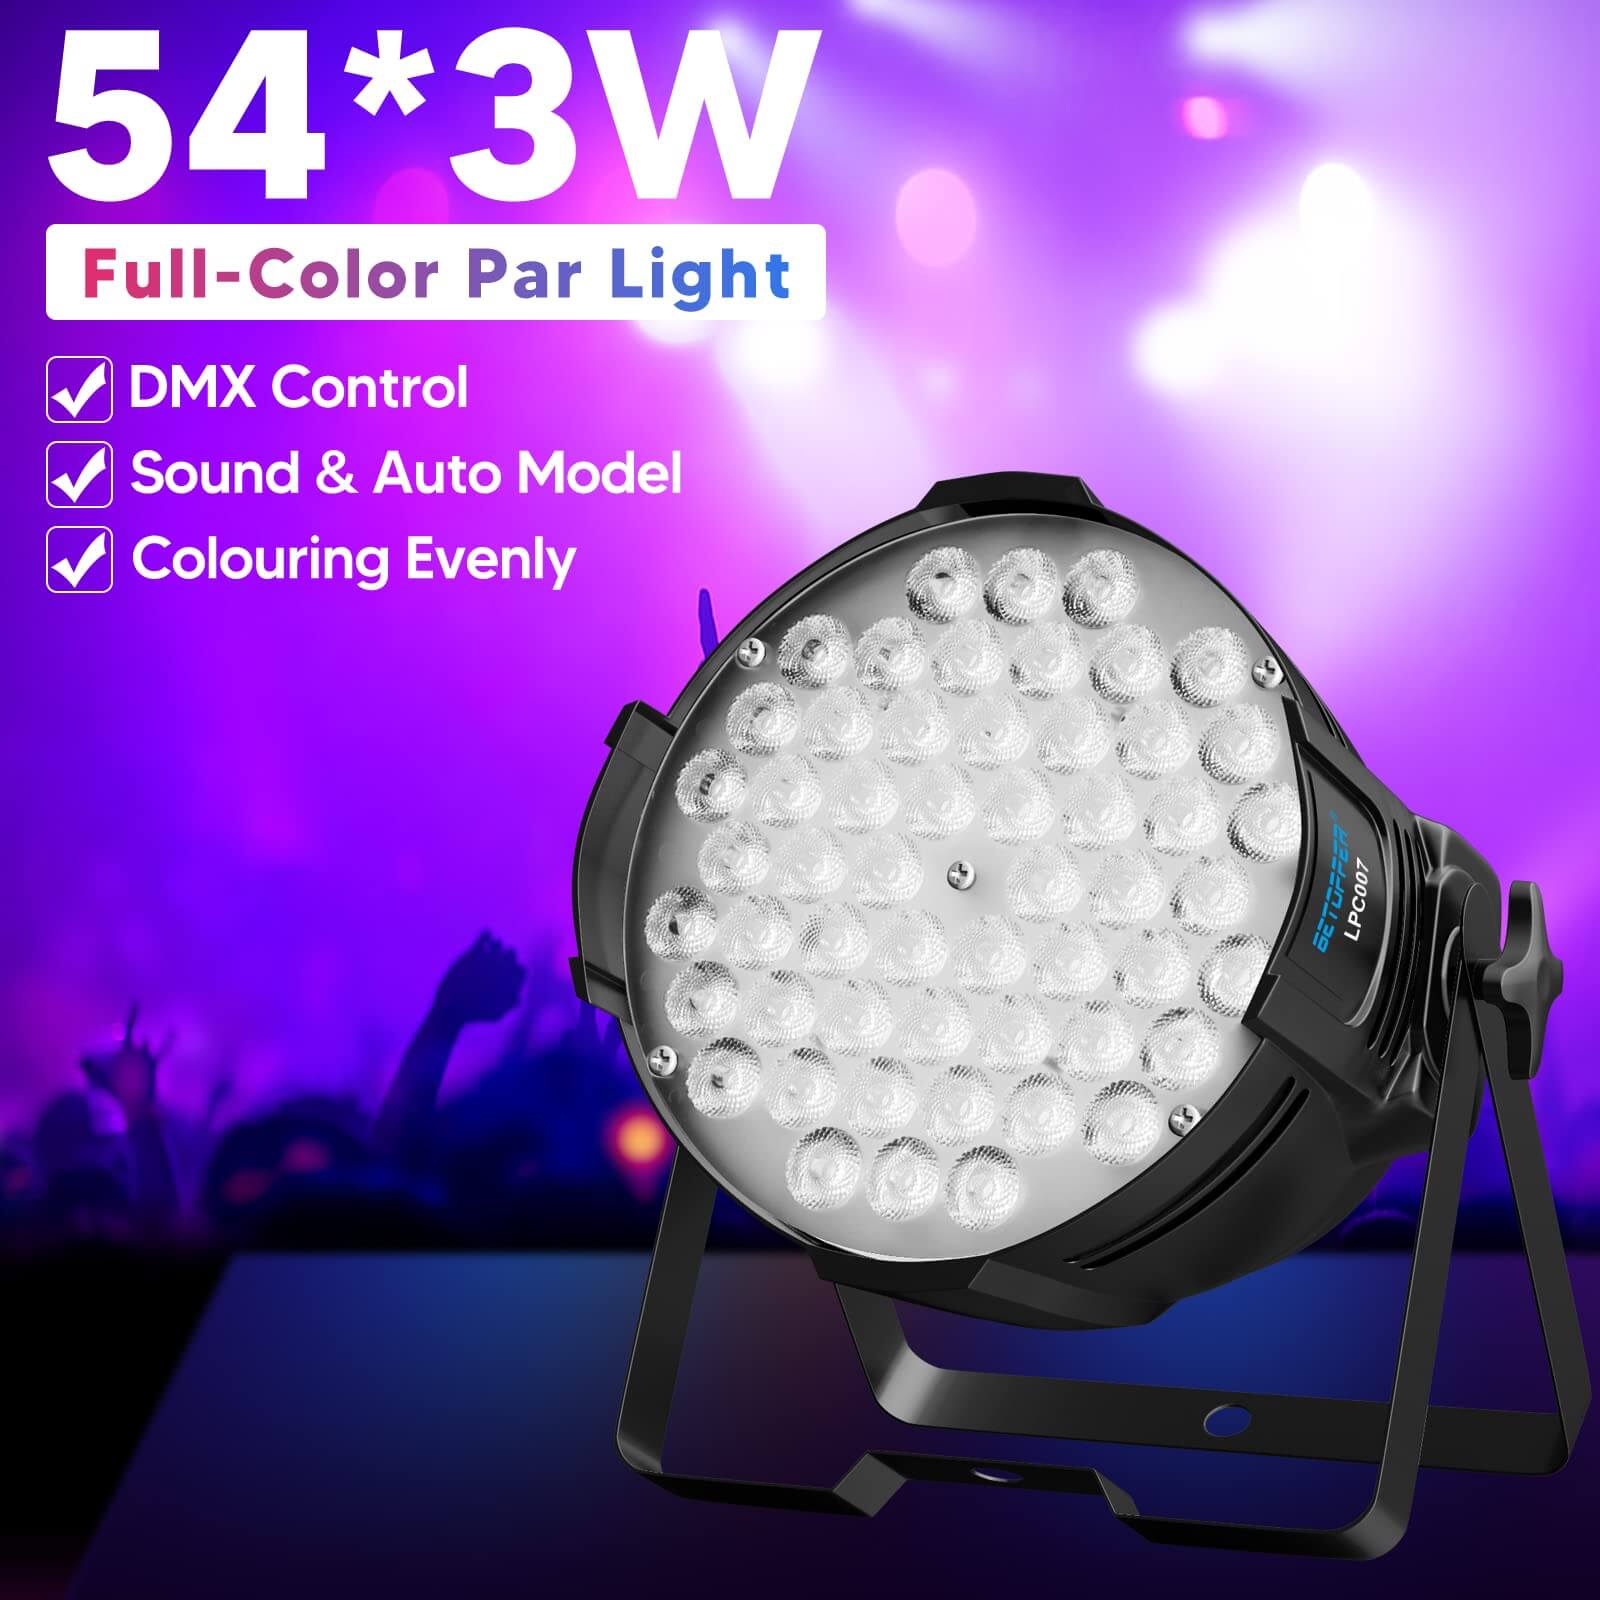 LED Par Light | Led Par Can | LPC007 Par Light Price | Betopper LPC007